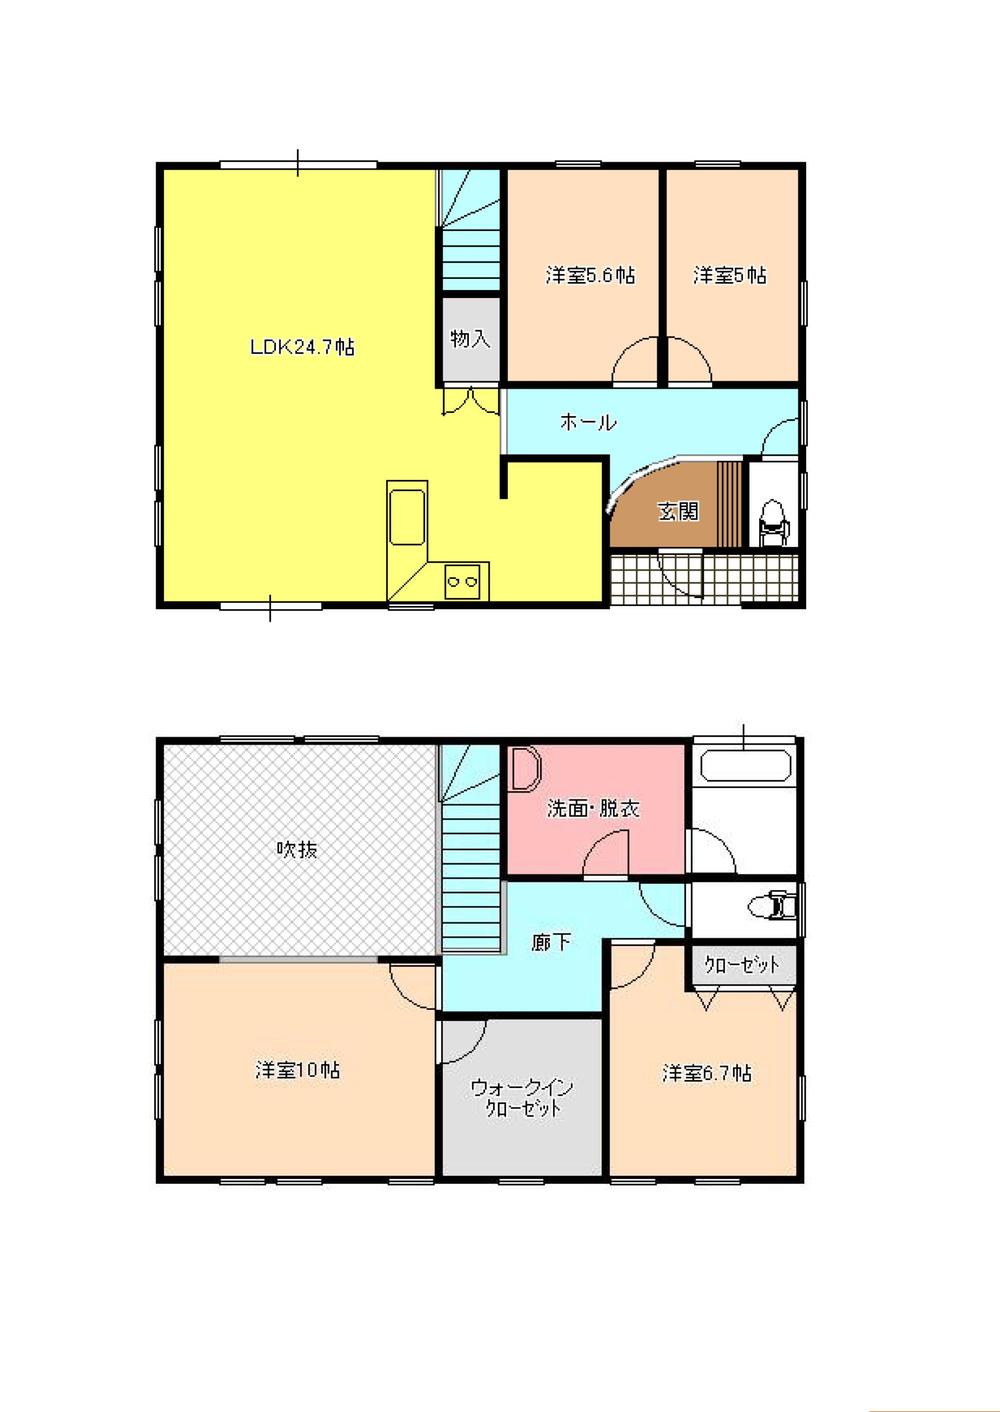 Floor plan. 24,900,000 yen, 4LDK + S (storeroom), Land area 191.16 sq m , Building area 129.28 sq m